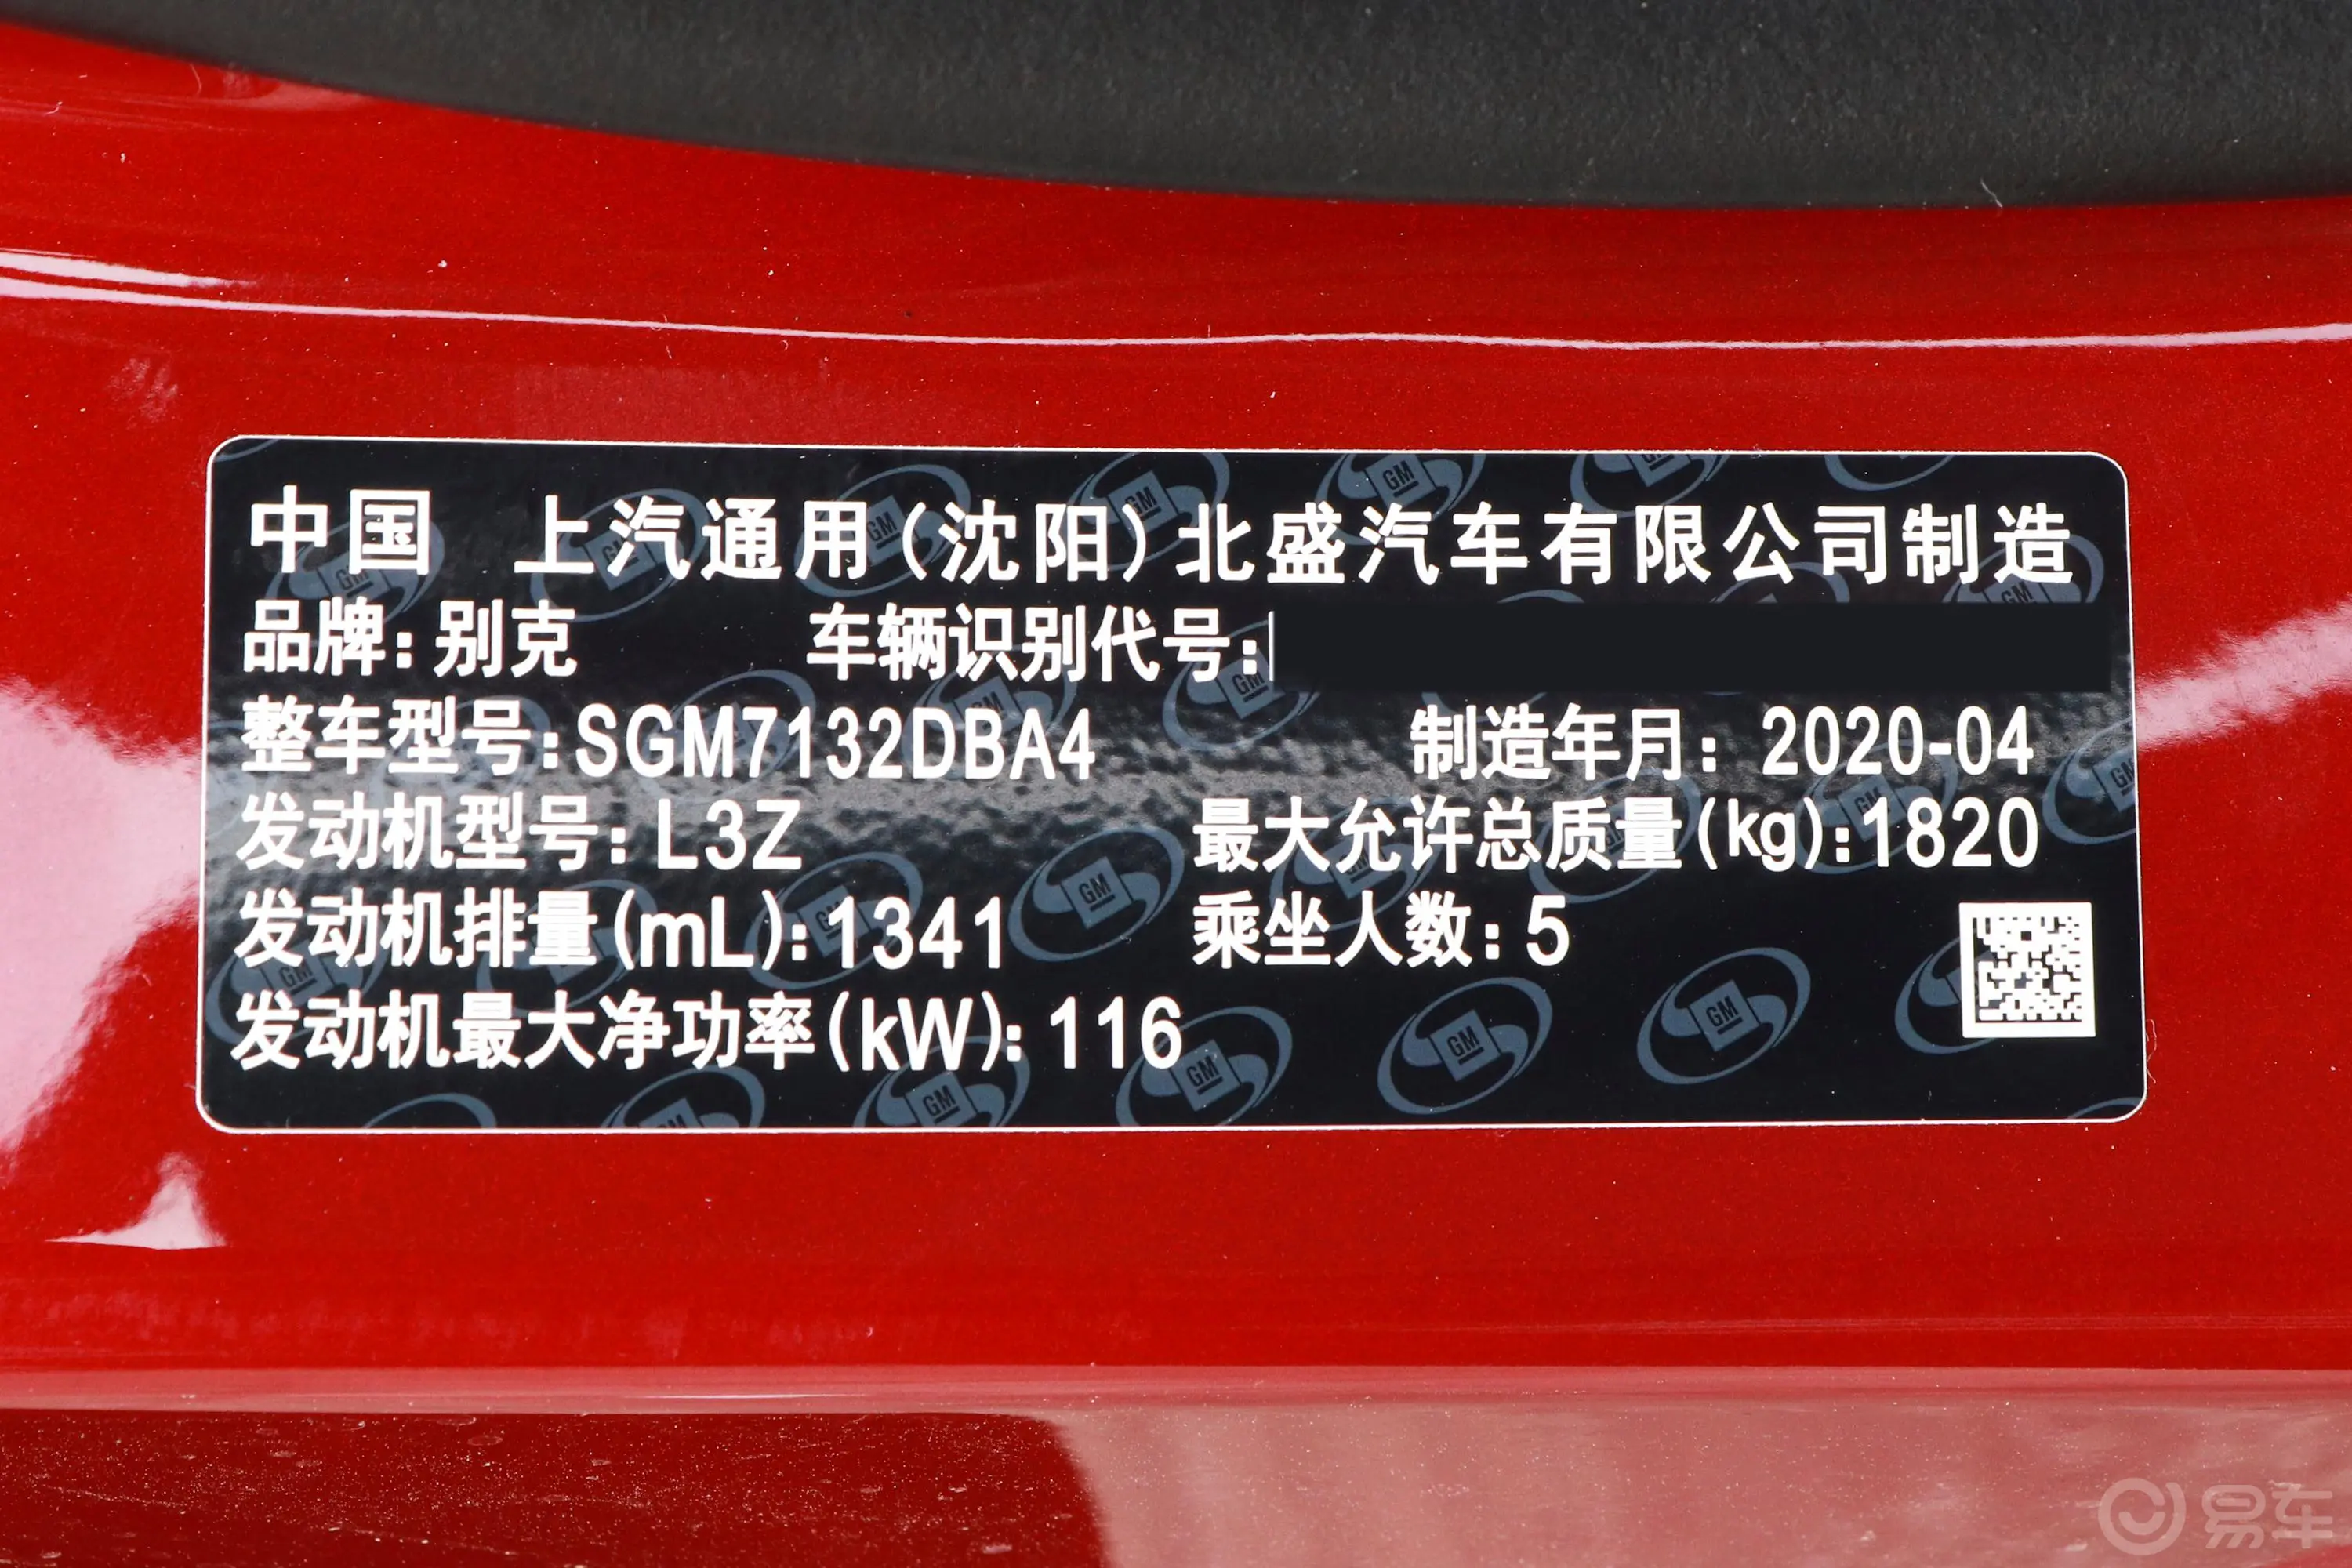 威朗三厢 GS 20T CVT 豪华版车辆信息铭牌